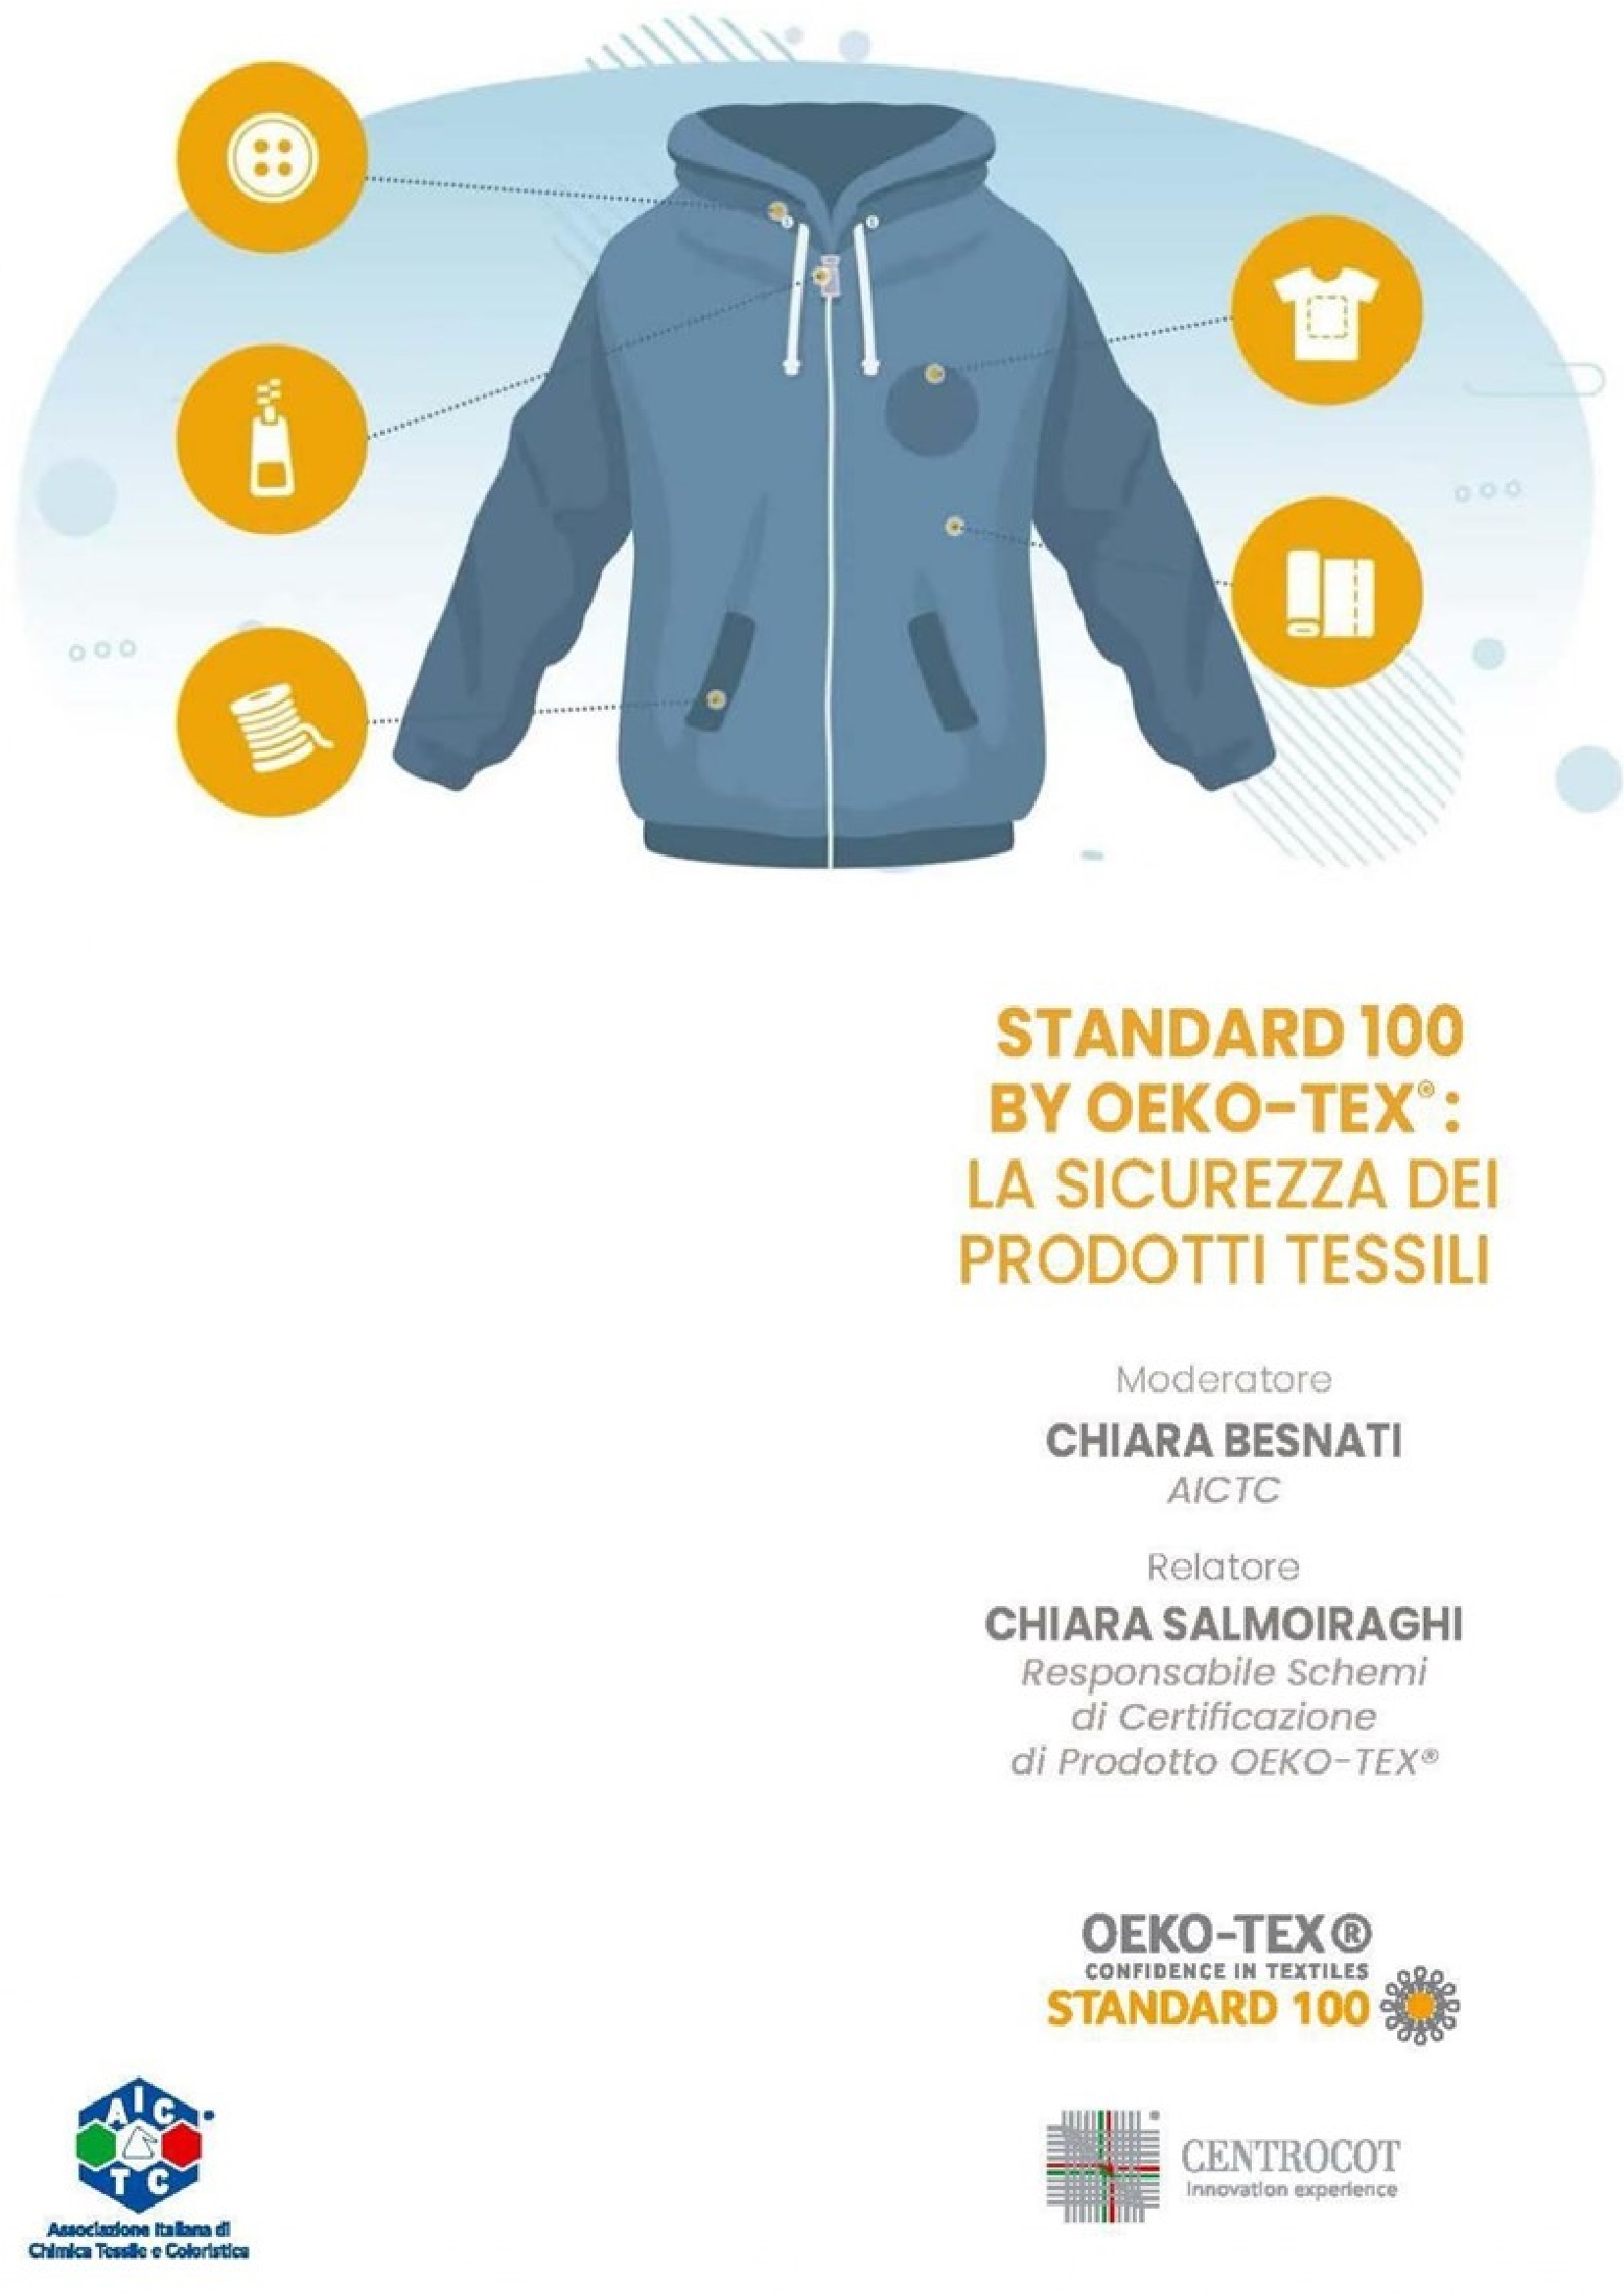 STeP by OEKO-TEX® e la garanzia del processo sostenibile